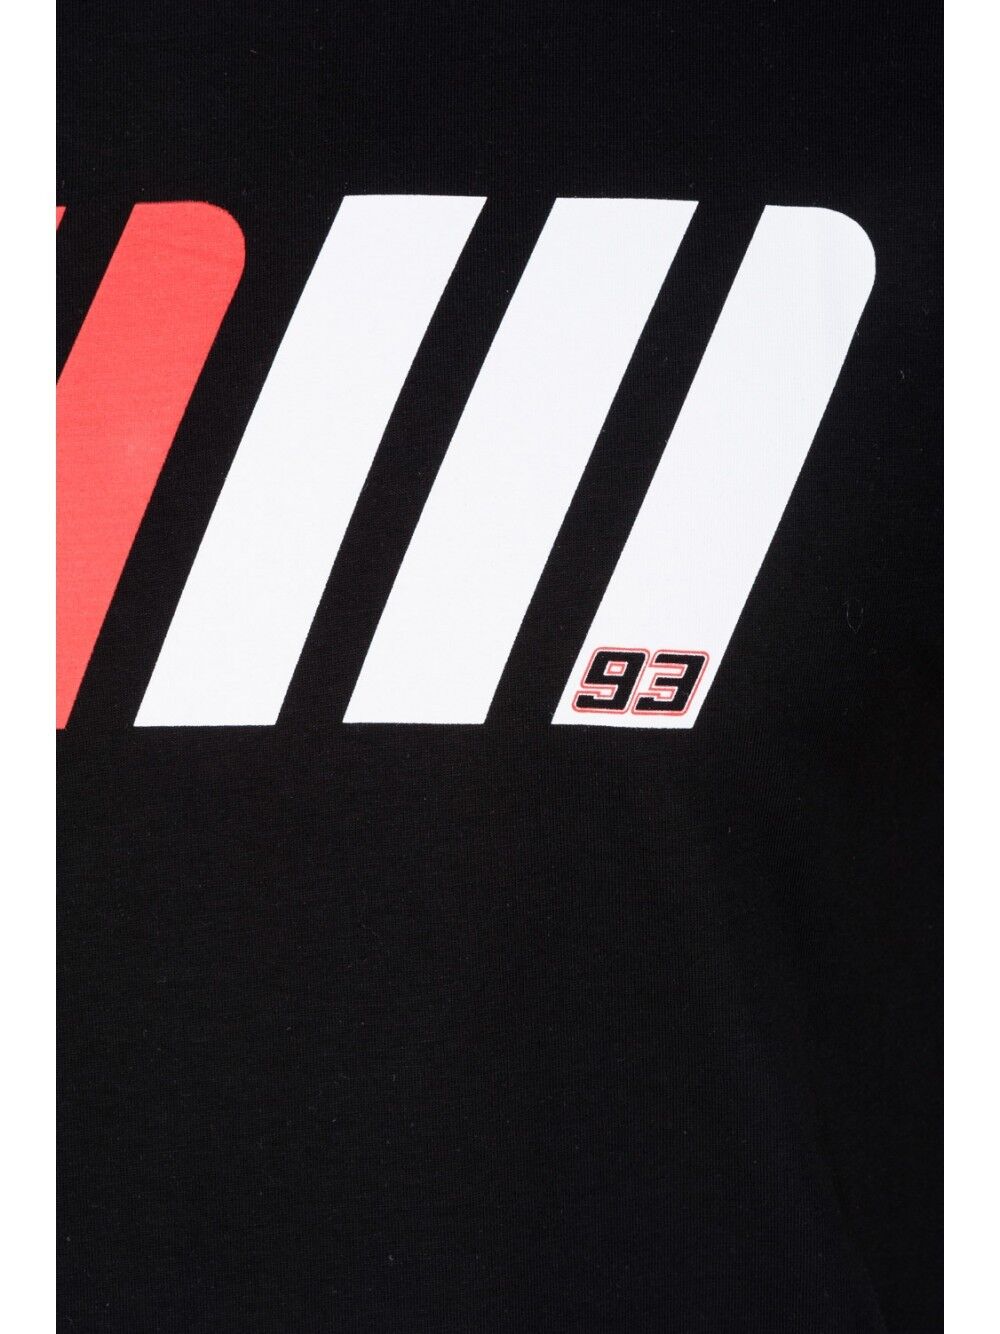 Official Marc Marquez 93 Black T'shirt - 17 33002